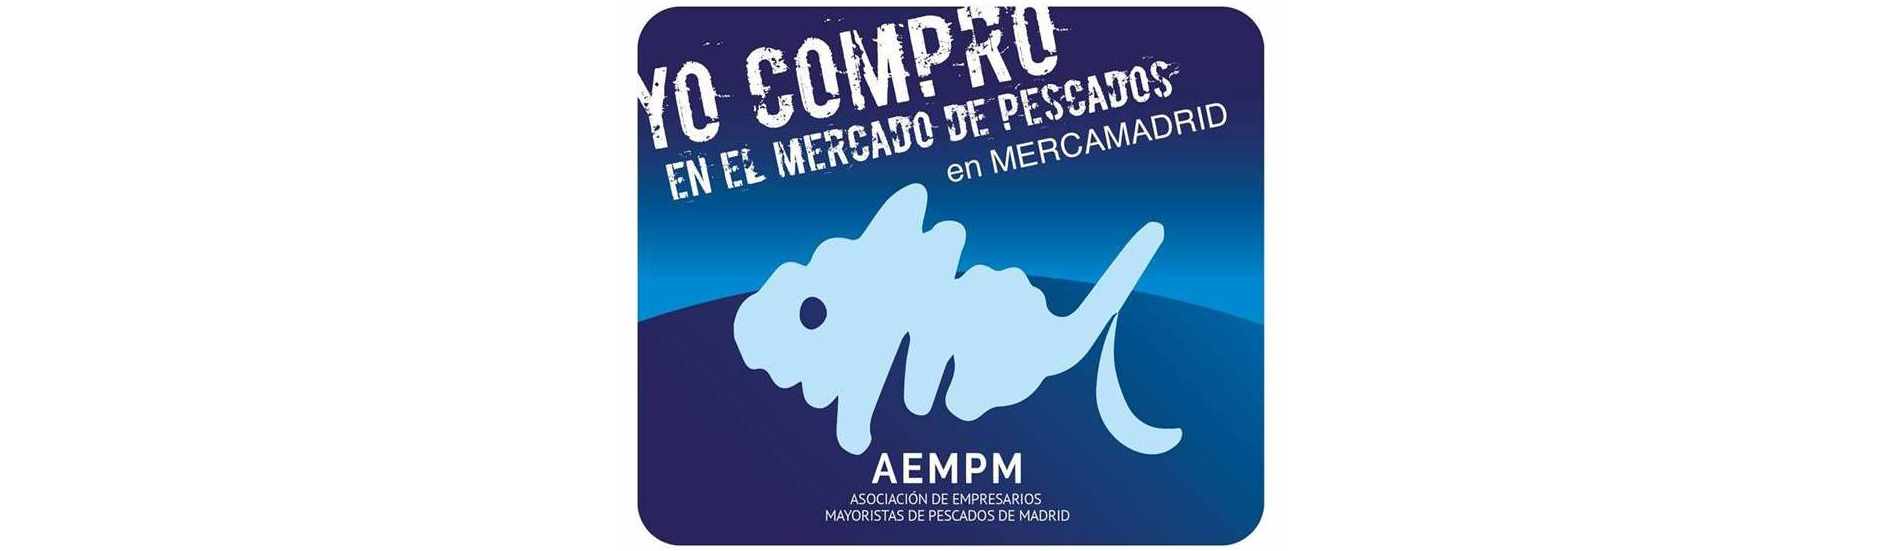 La Asociación de Empresarios Mayoristas de Pescados de Madrid lanza la campaña “Yo compro en el Mercado de Pescados en Mercamadrid”